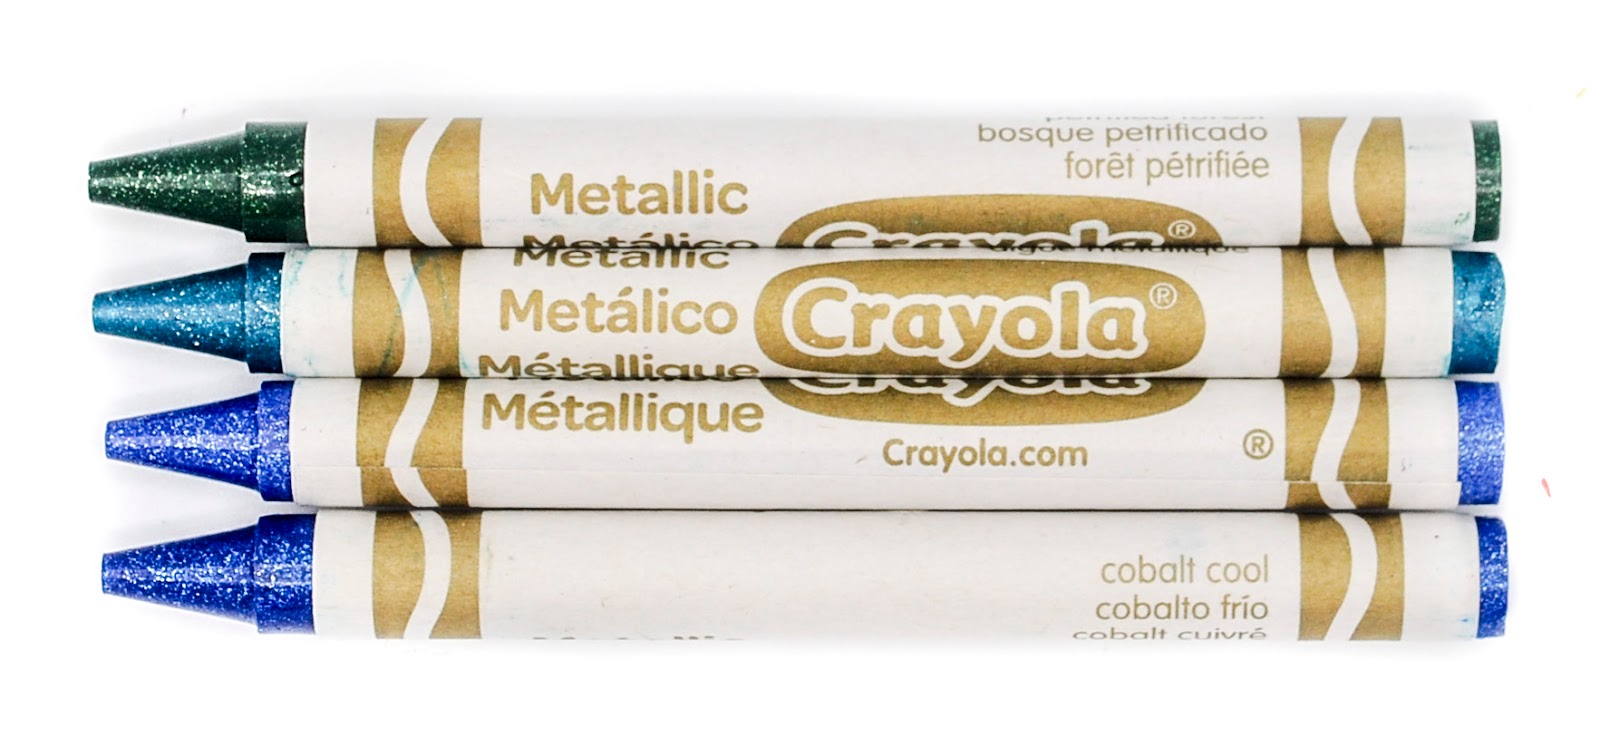 24 count Crayola Metallic Crayons - Sunnyside Gift Shop